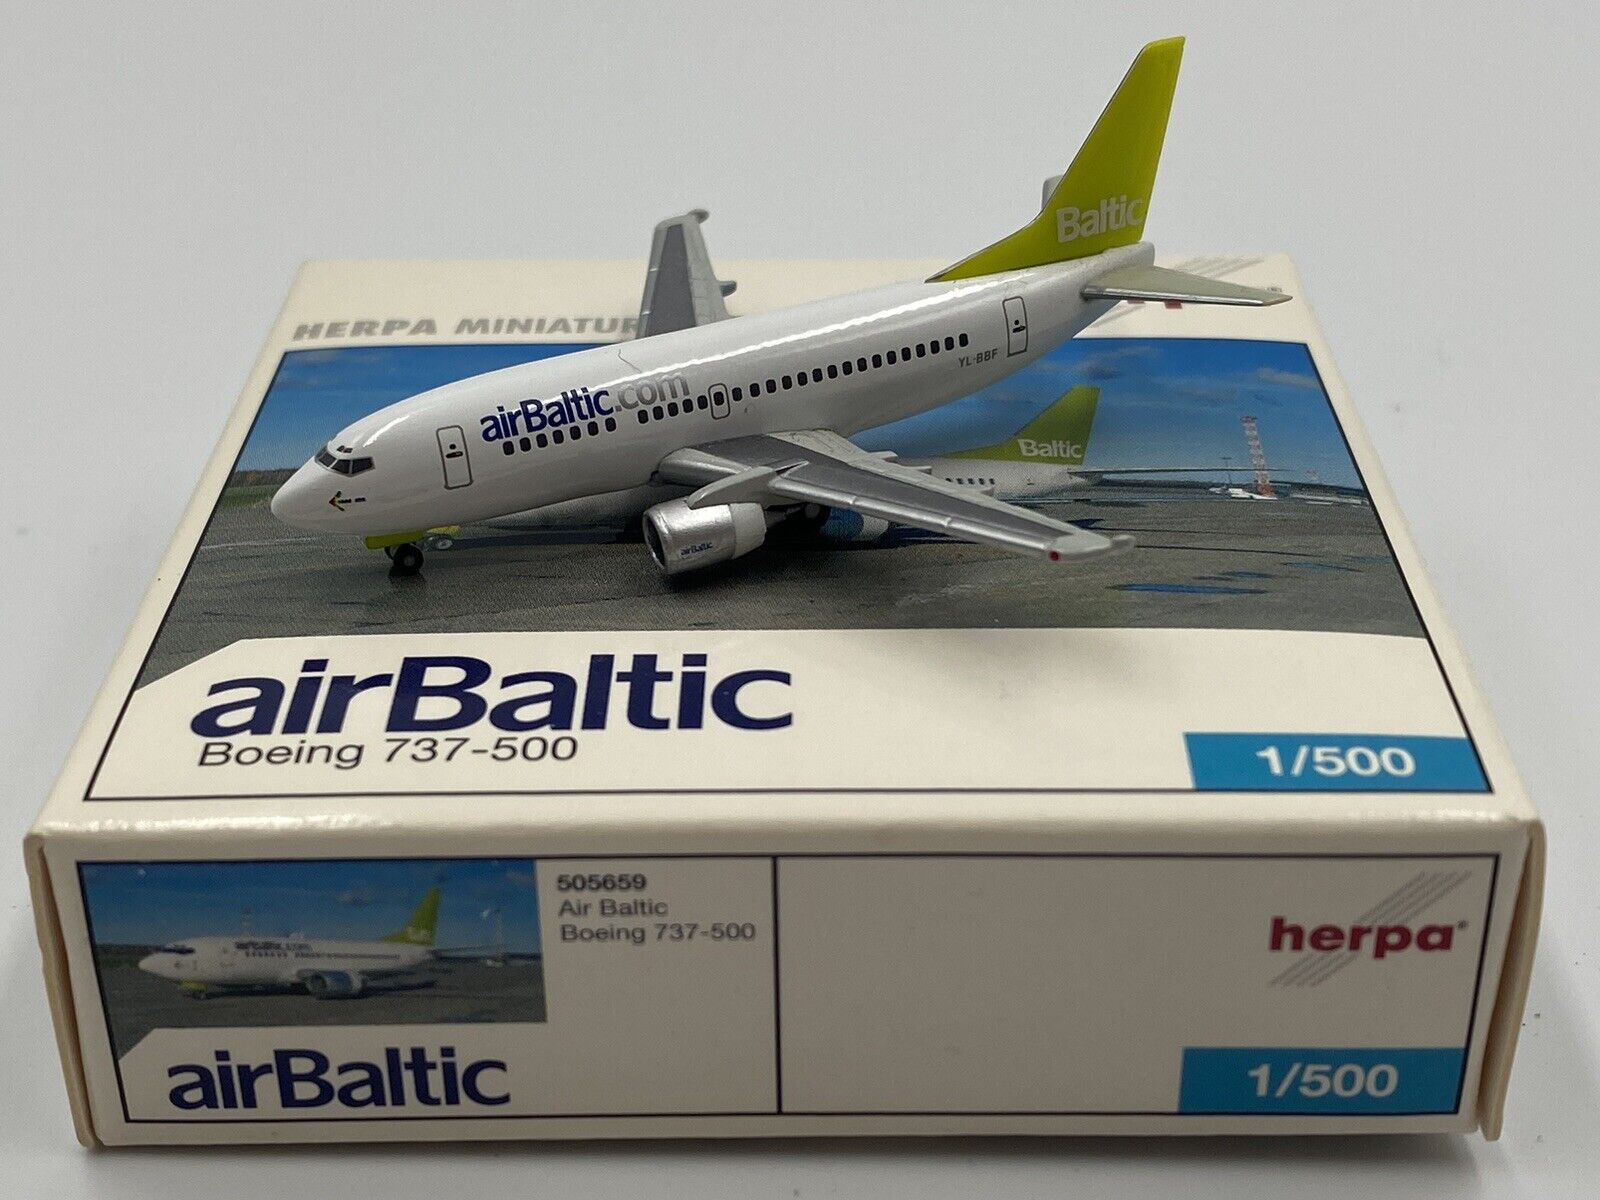 HERPA WINGS (505659) 1:500 AIR BALTIC BOEING 737-500 BOXED 